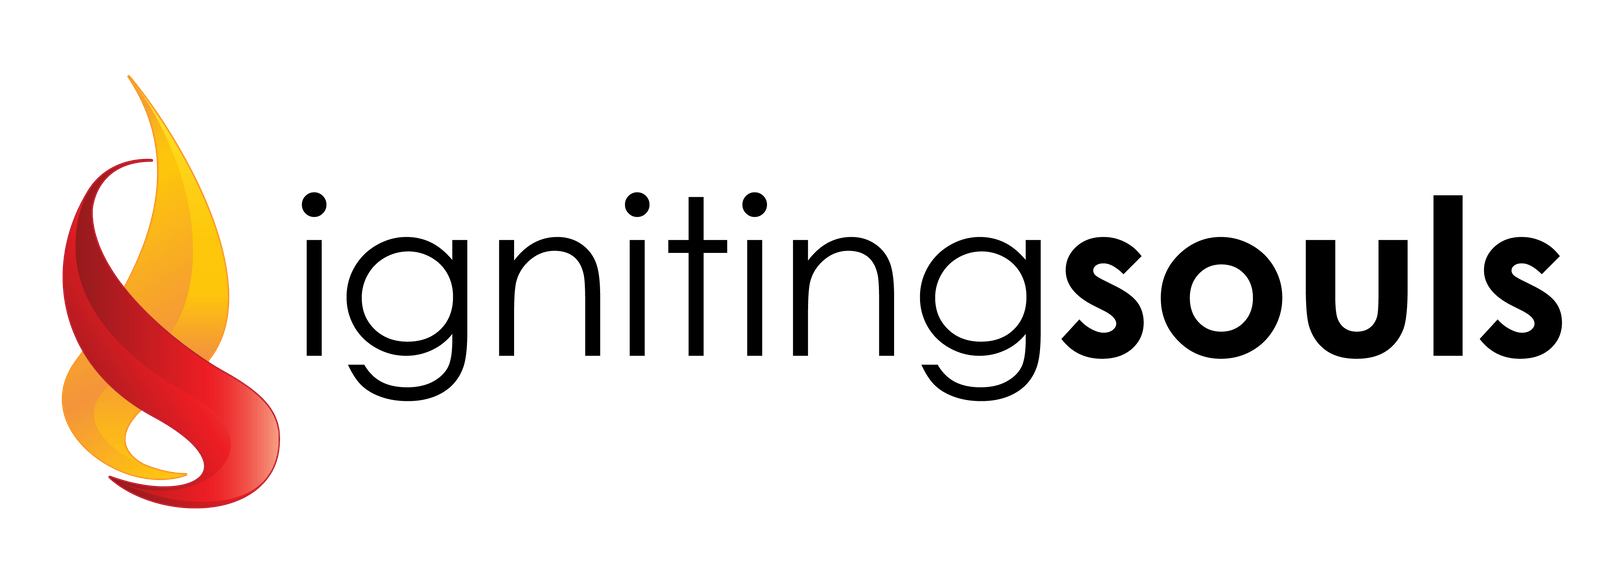 Igniting Souls Publishing Agency logo